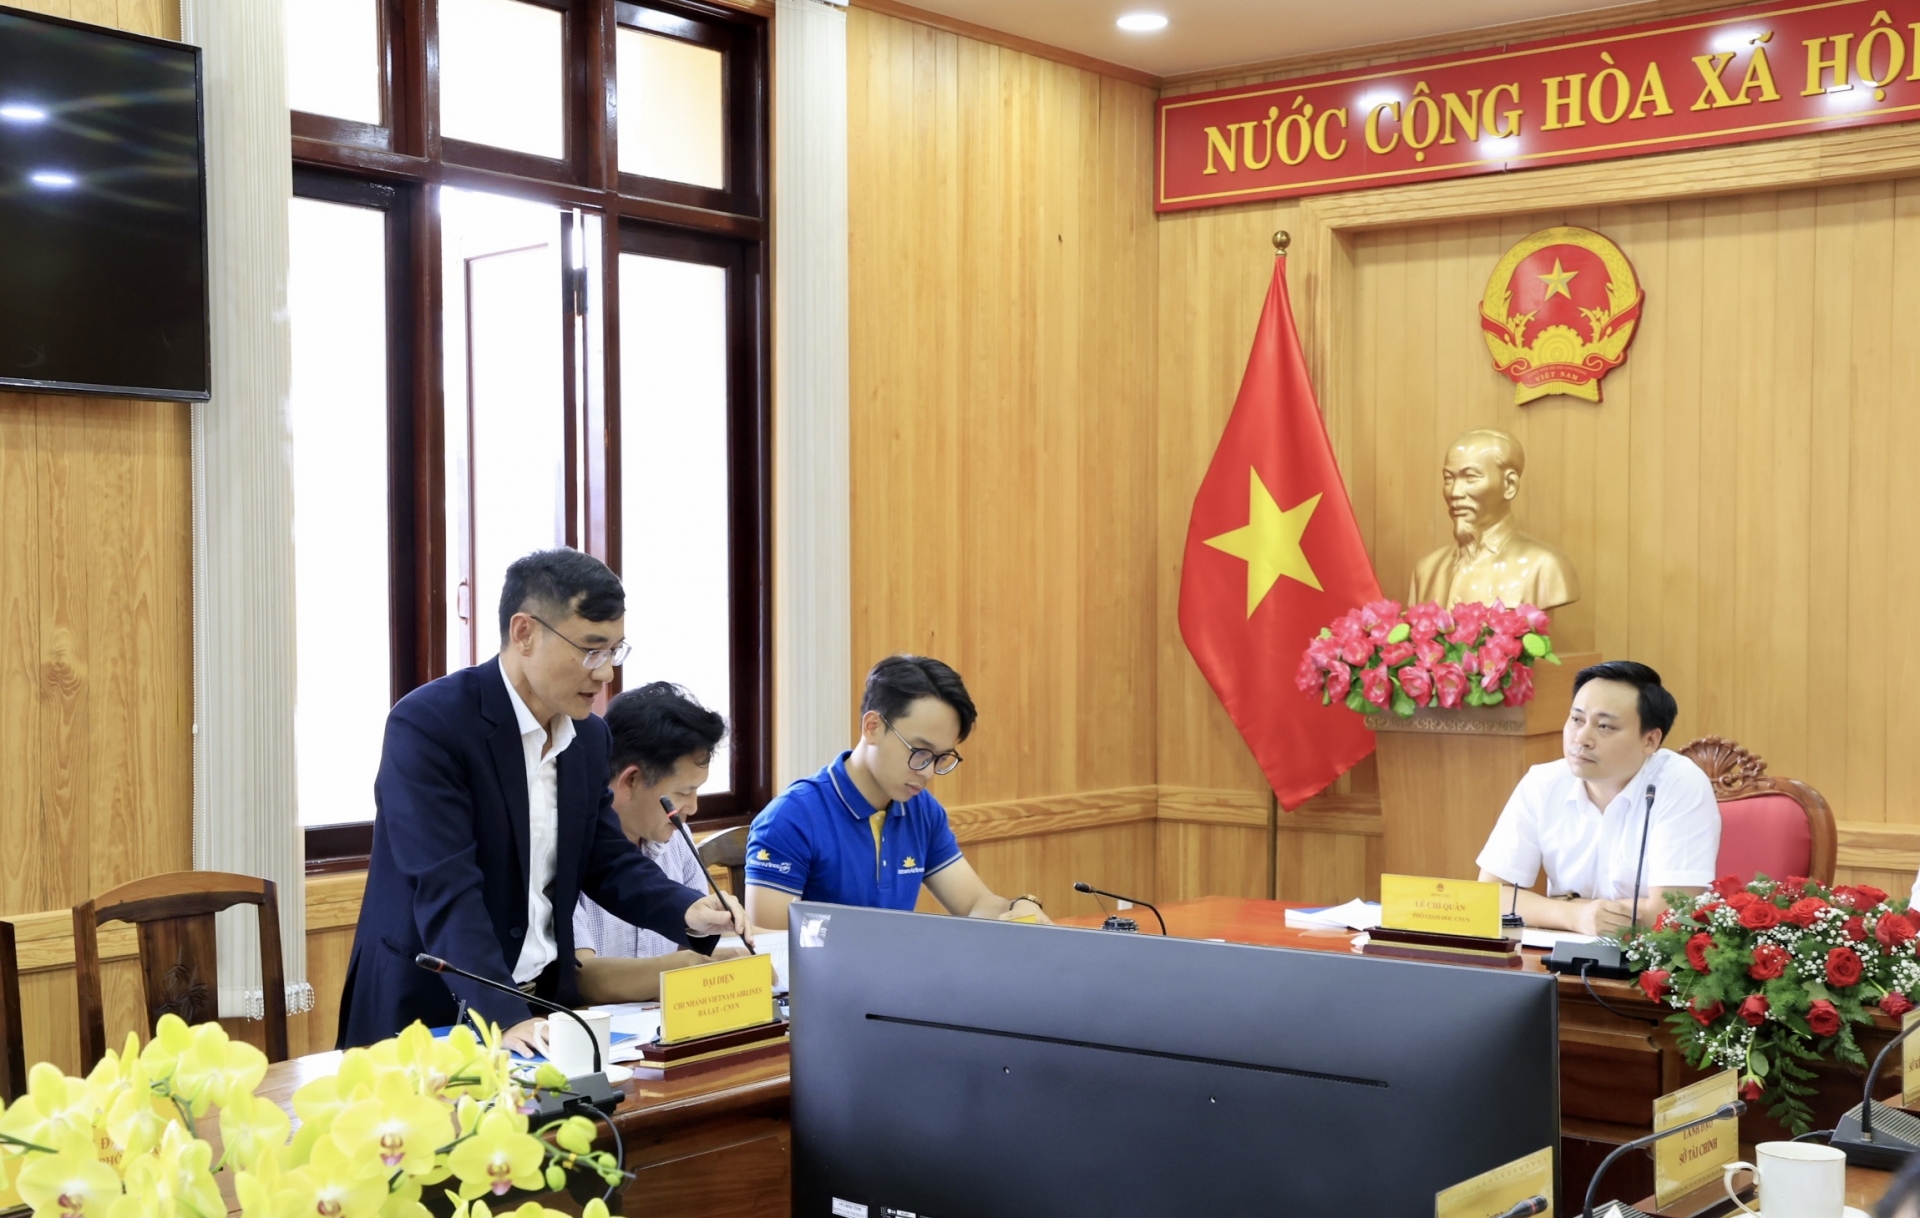 Ông Ngô Minh Tiến - Phó trưởng phụ trách chi nhánh VNA tại Đà Lạt, đề xuất xem xét lại giá thuê Văn phòng của VNA tại Đà Lạt và thủ tục sửa chữa Văn phòng